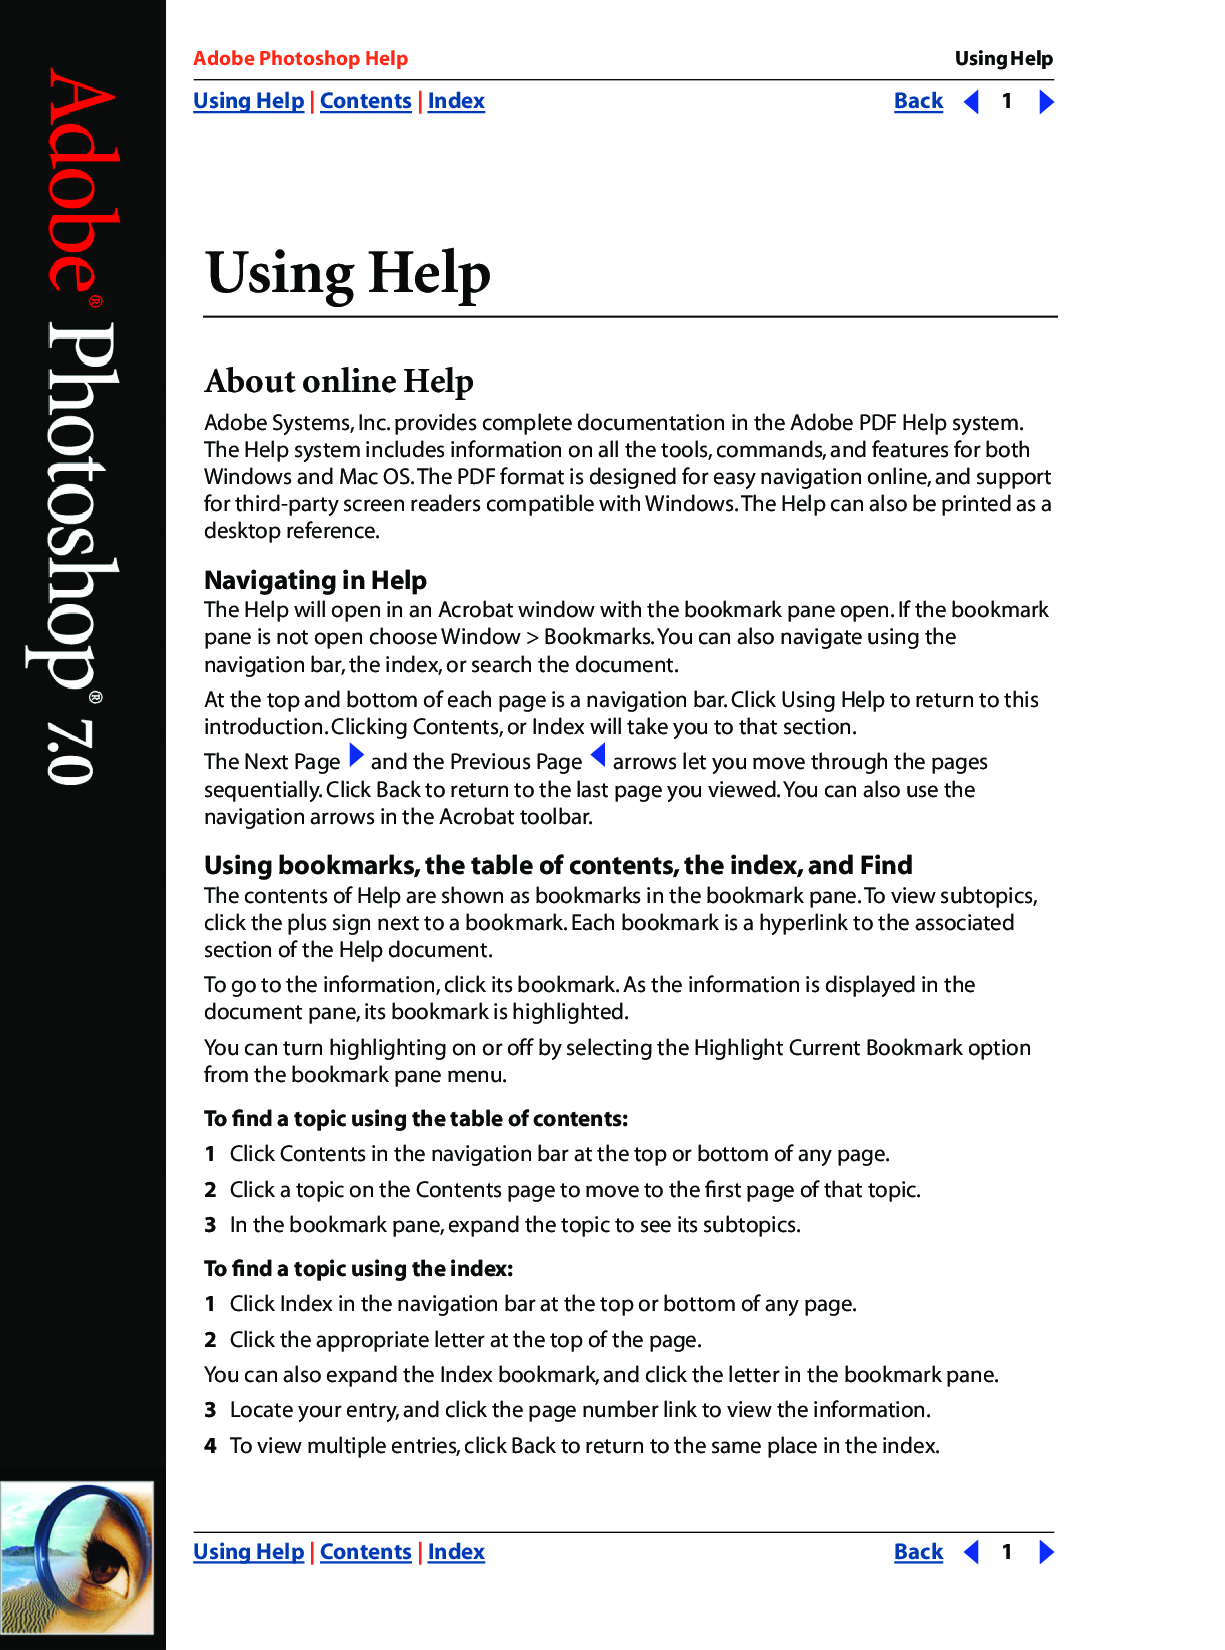 adobe photoshop 7 user manual pdf free download